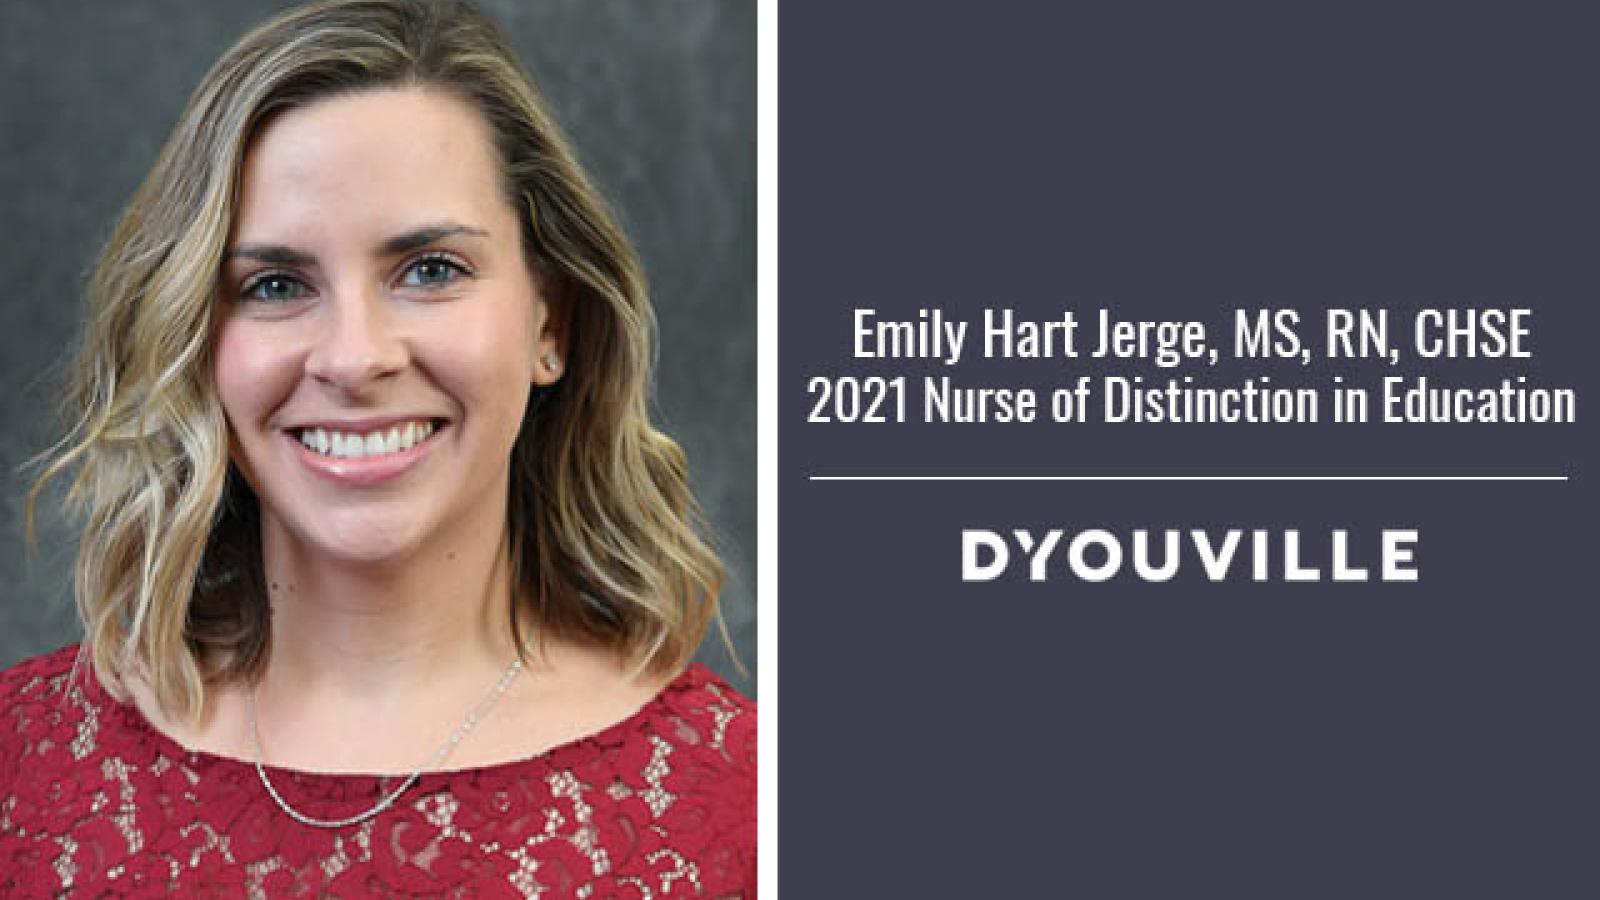 Jerge Named Nurse of Distinction for Education